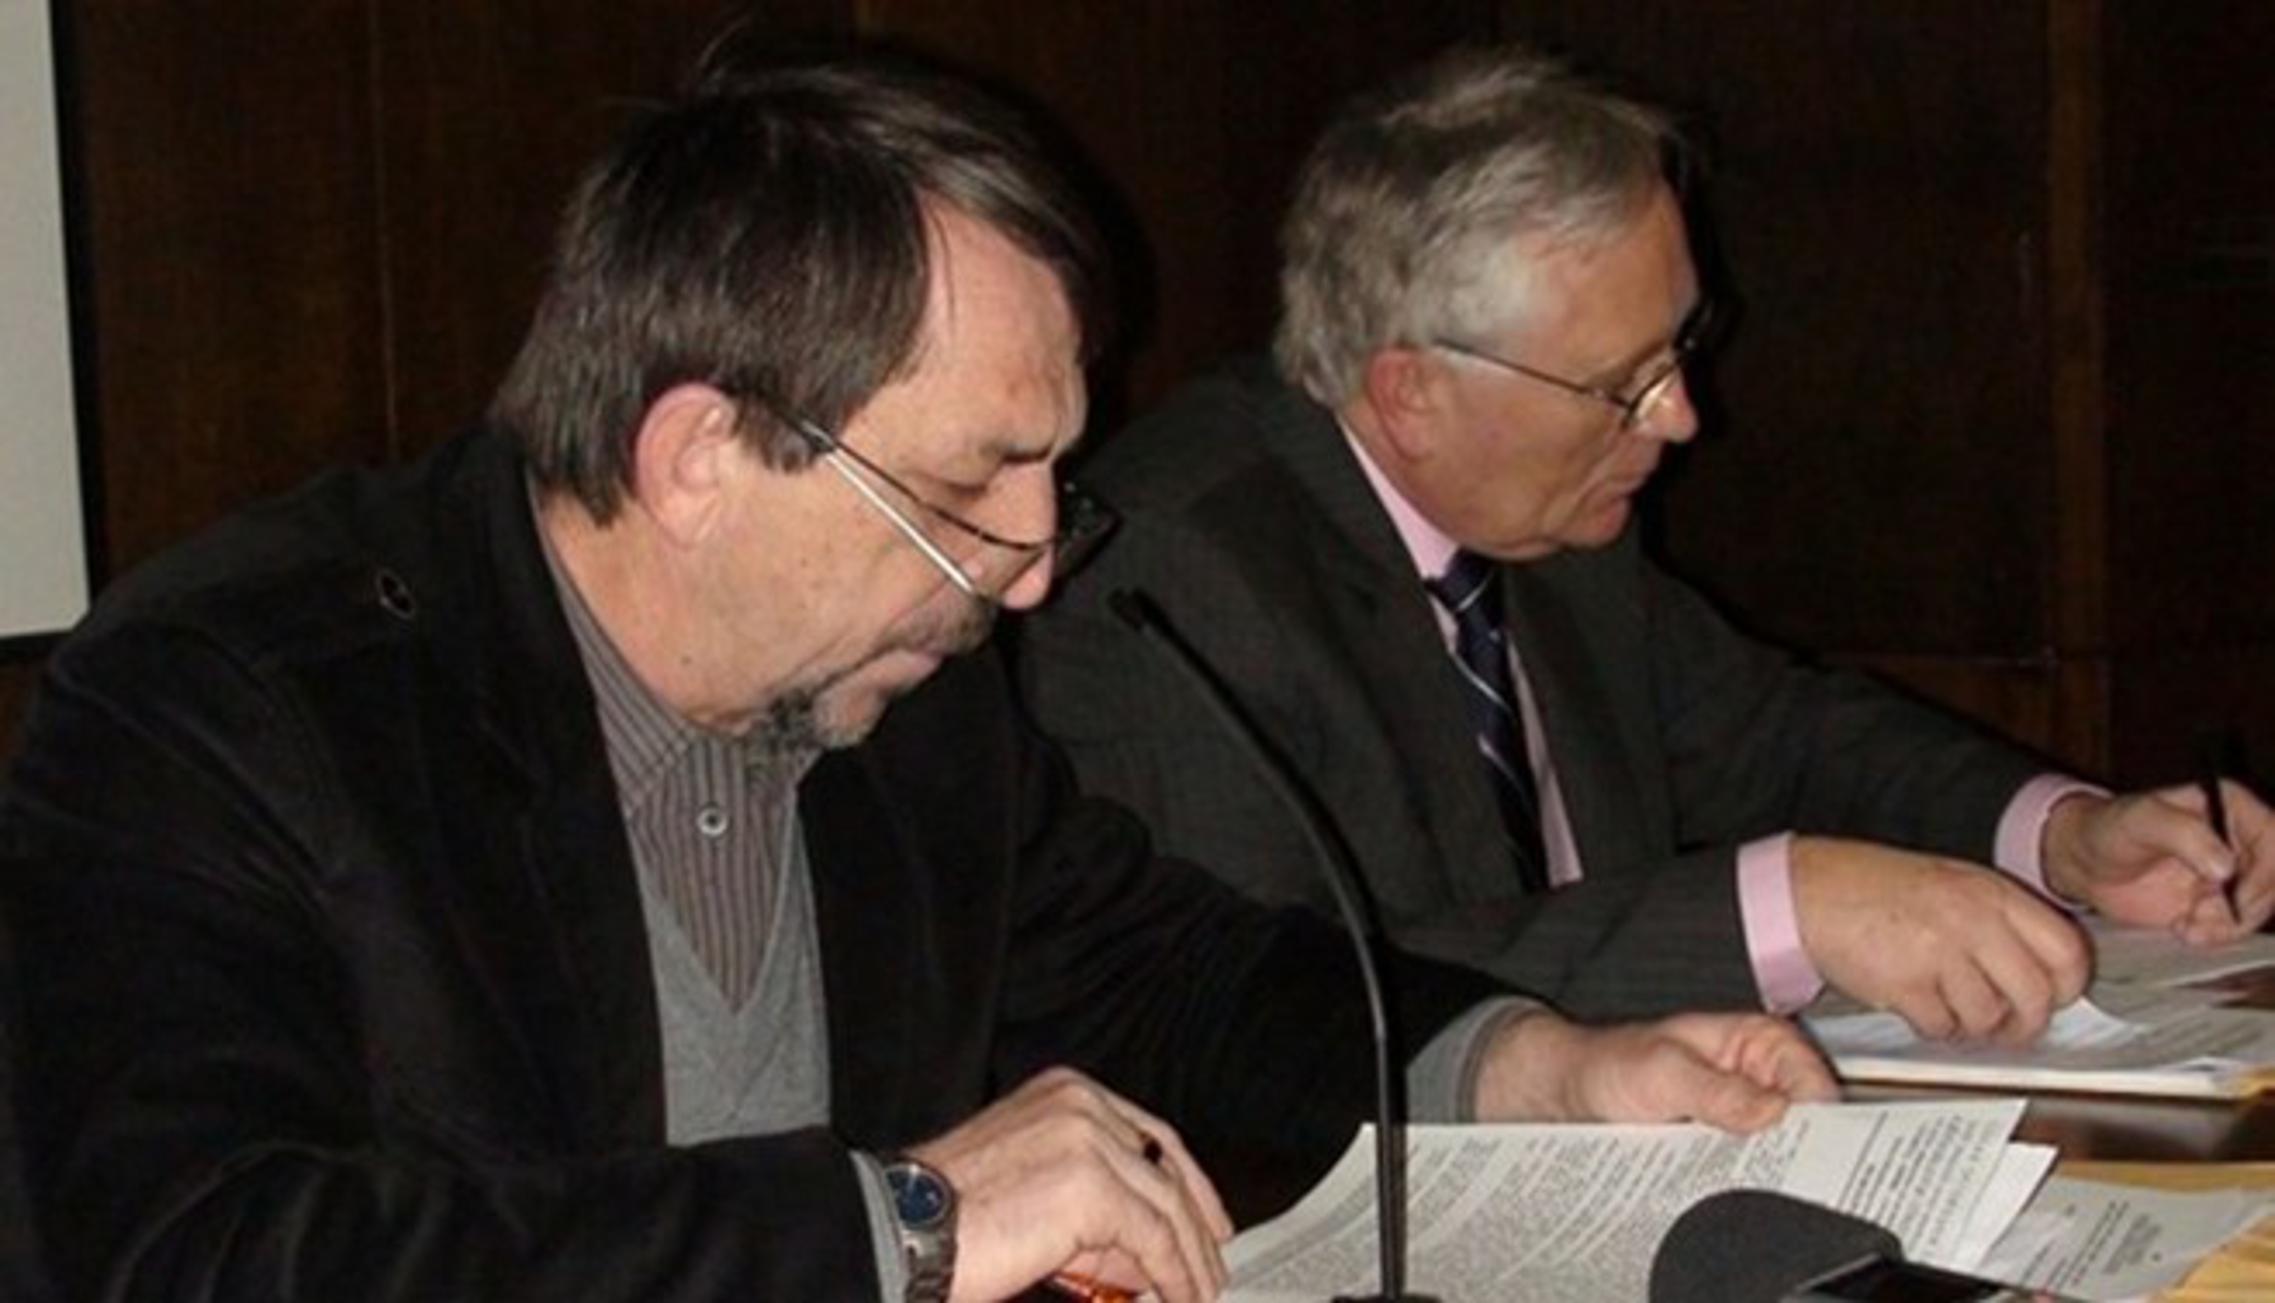  Damir Japundžić, dr.med. i Krunoslav Hoffer